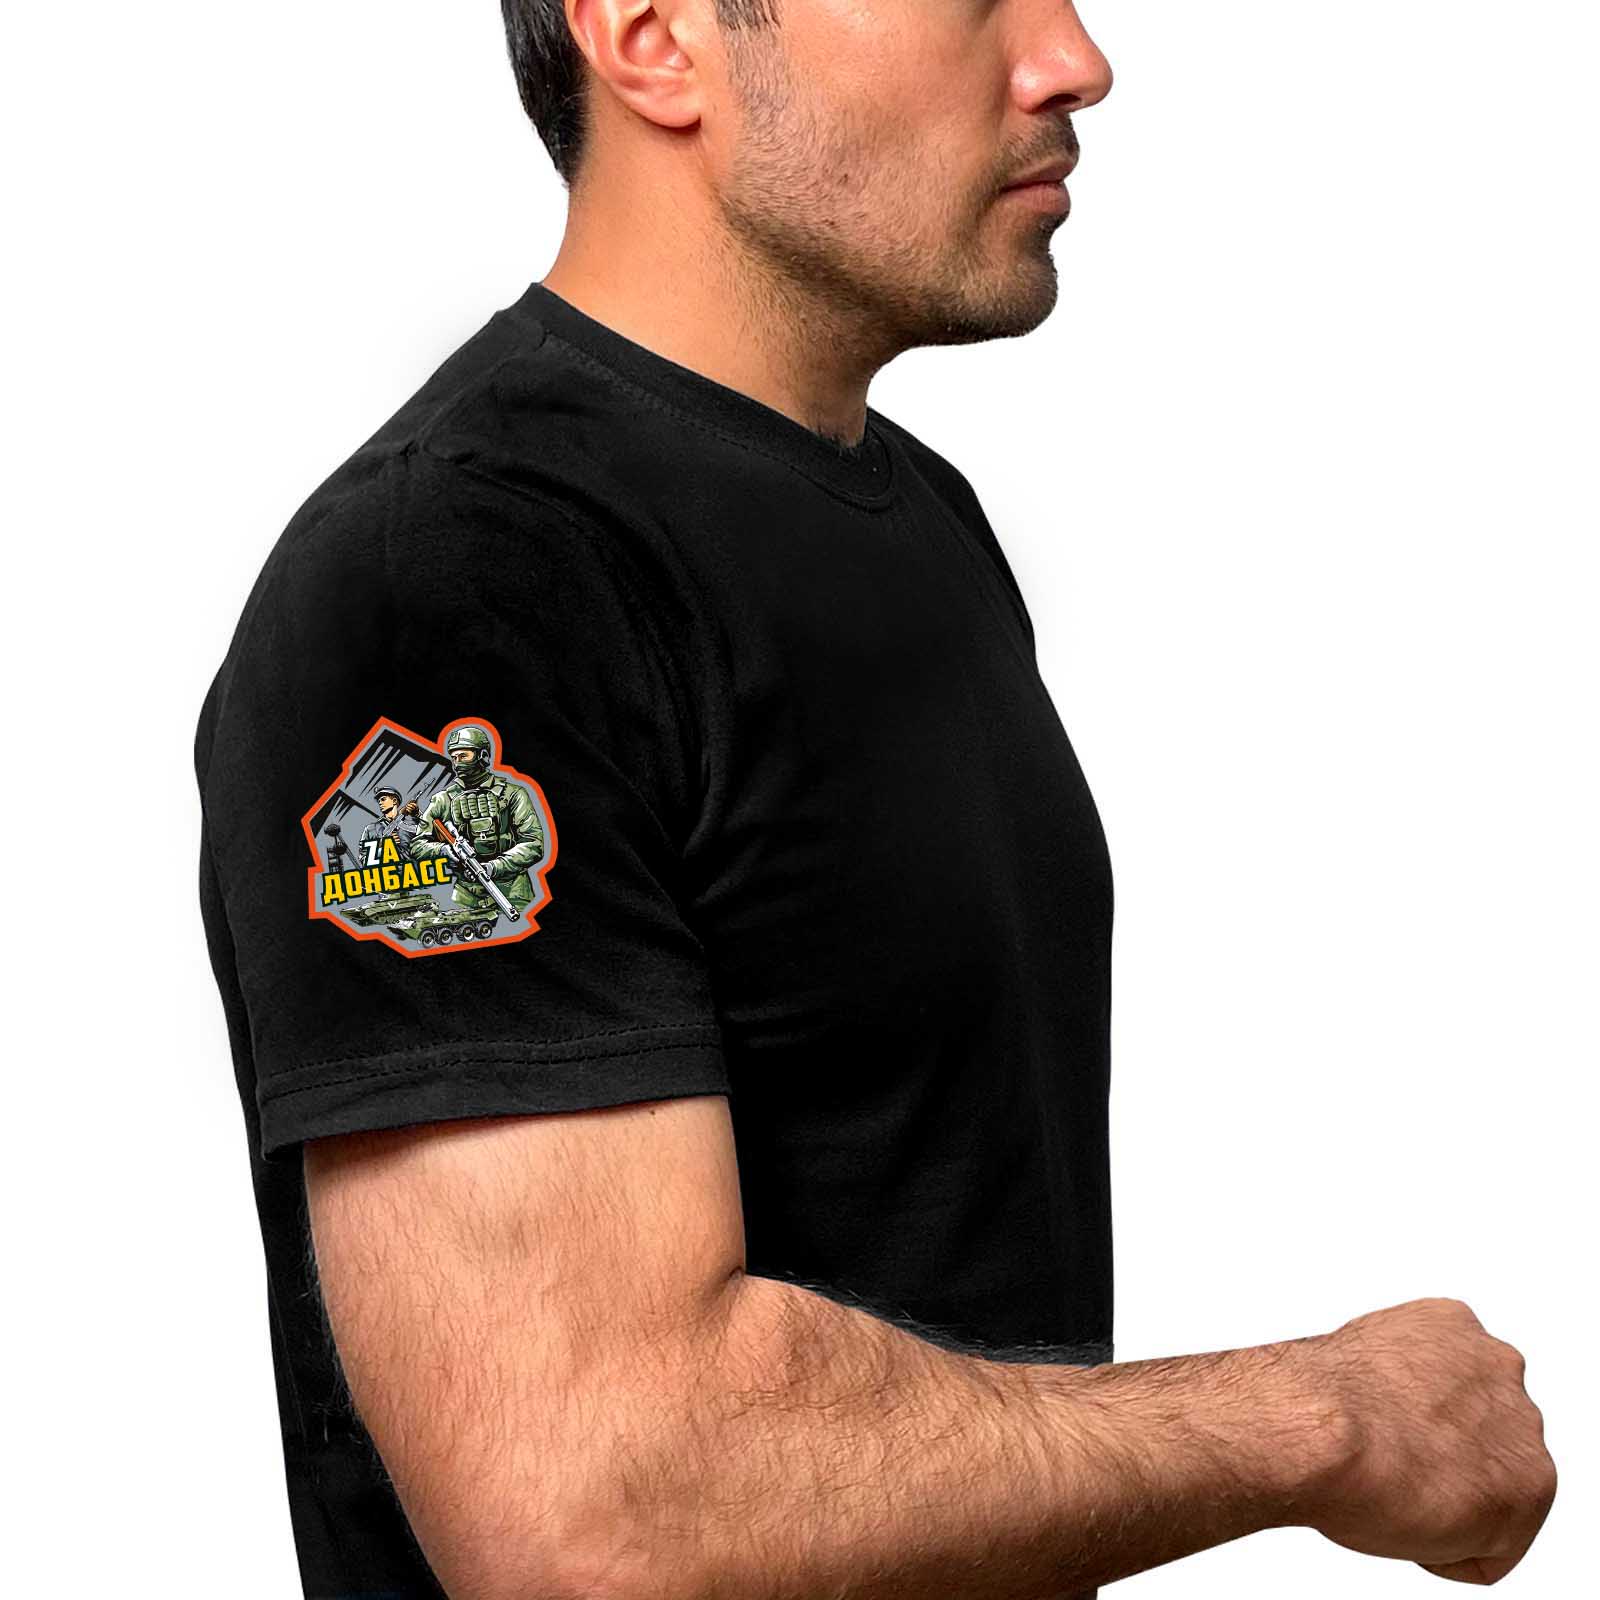 Чёрная футболка "Zа Донбасс" с термотрансфером на рукаве